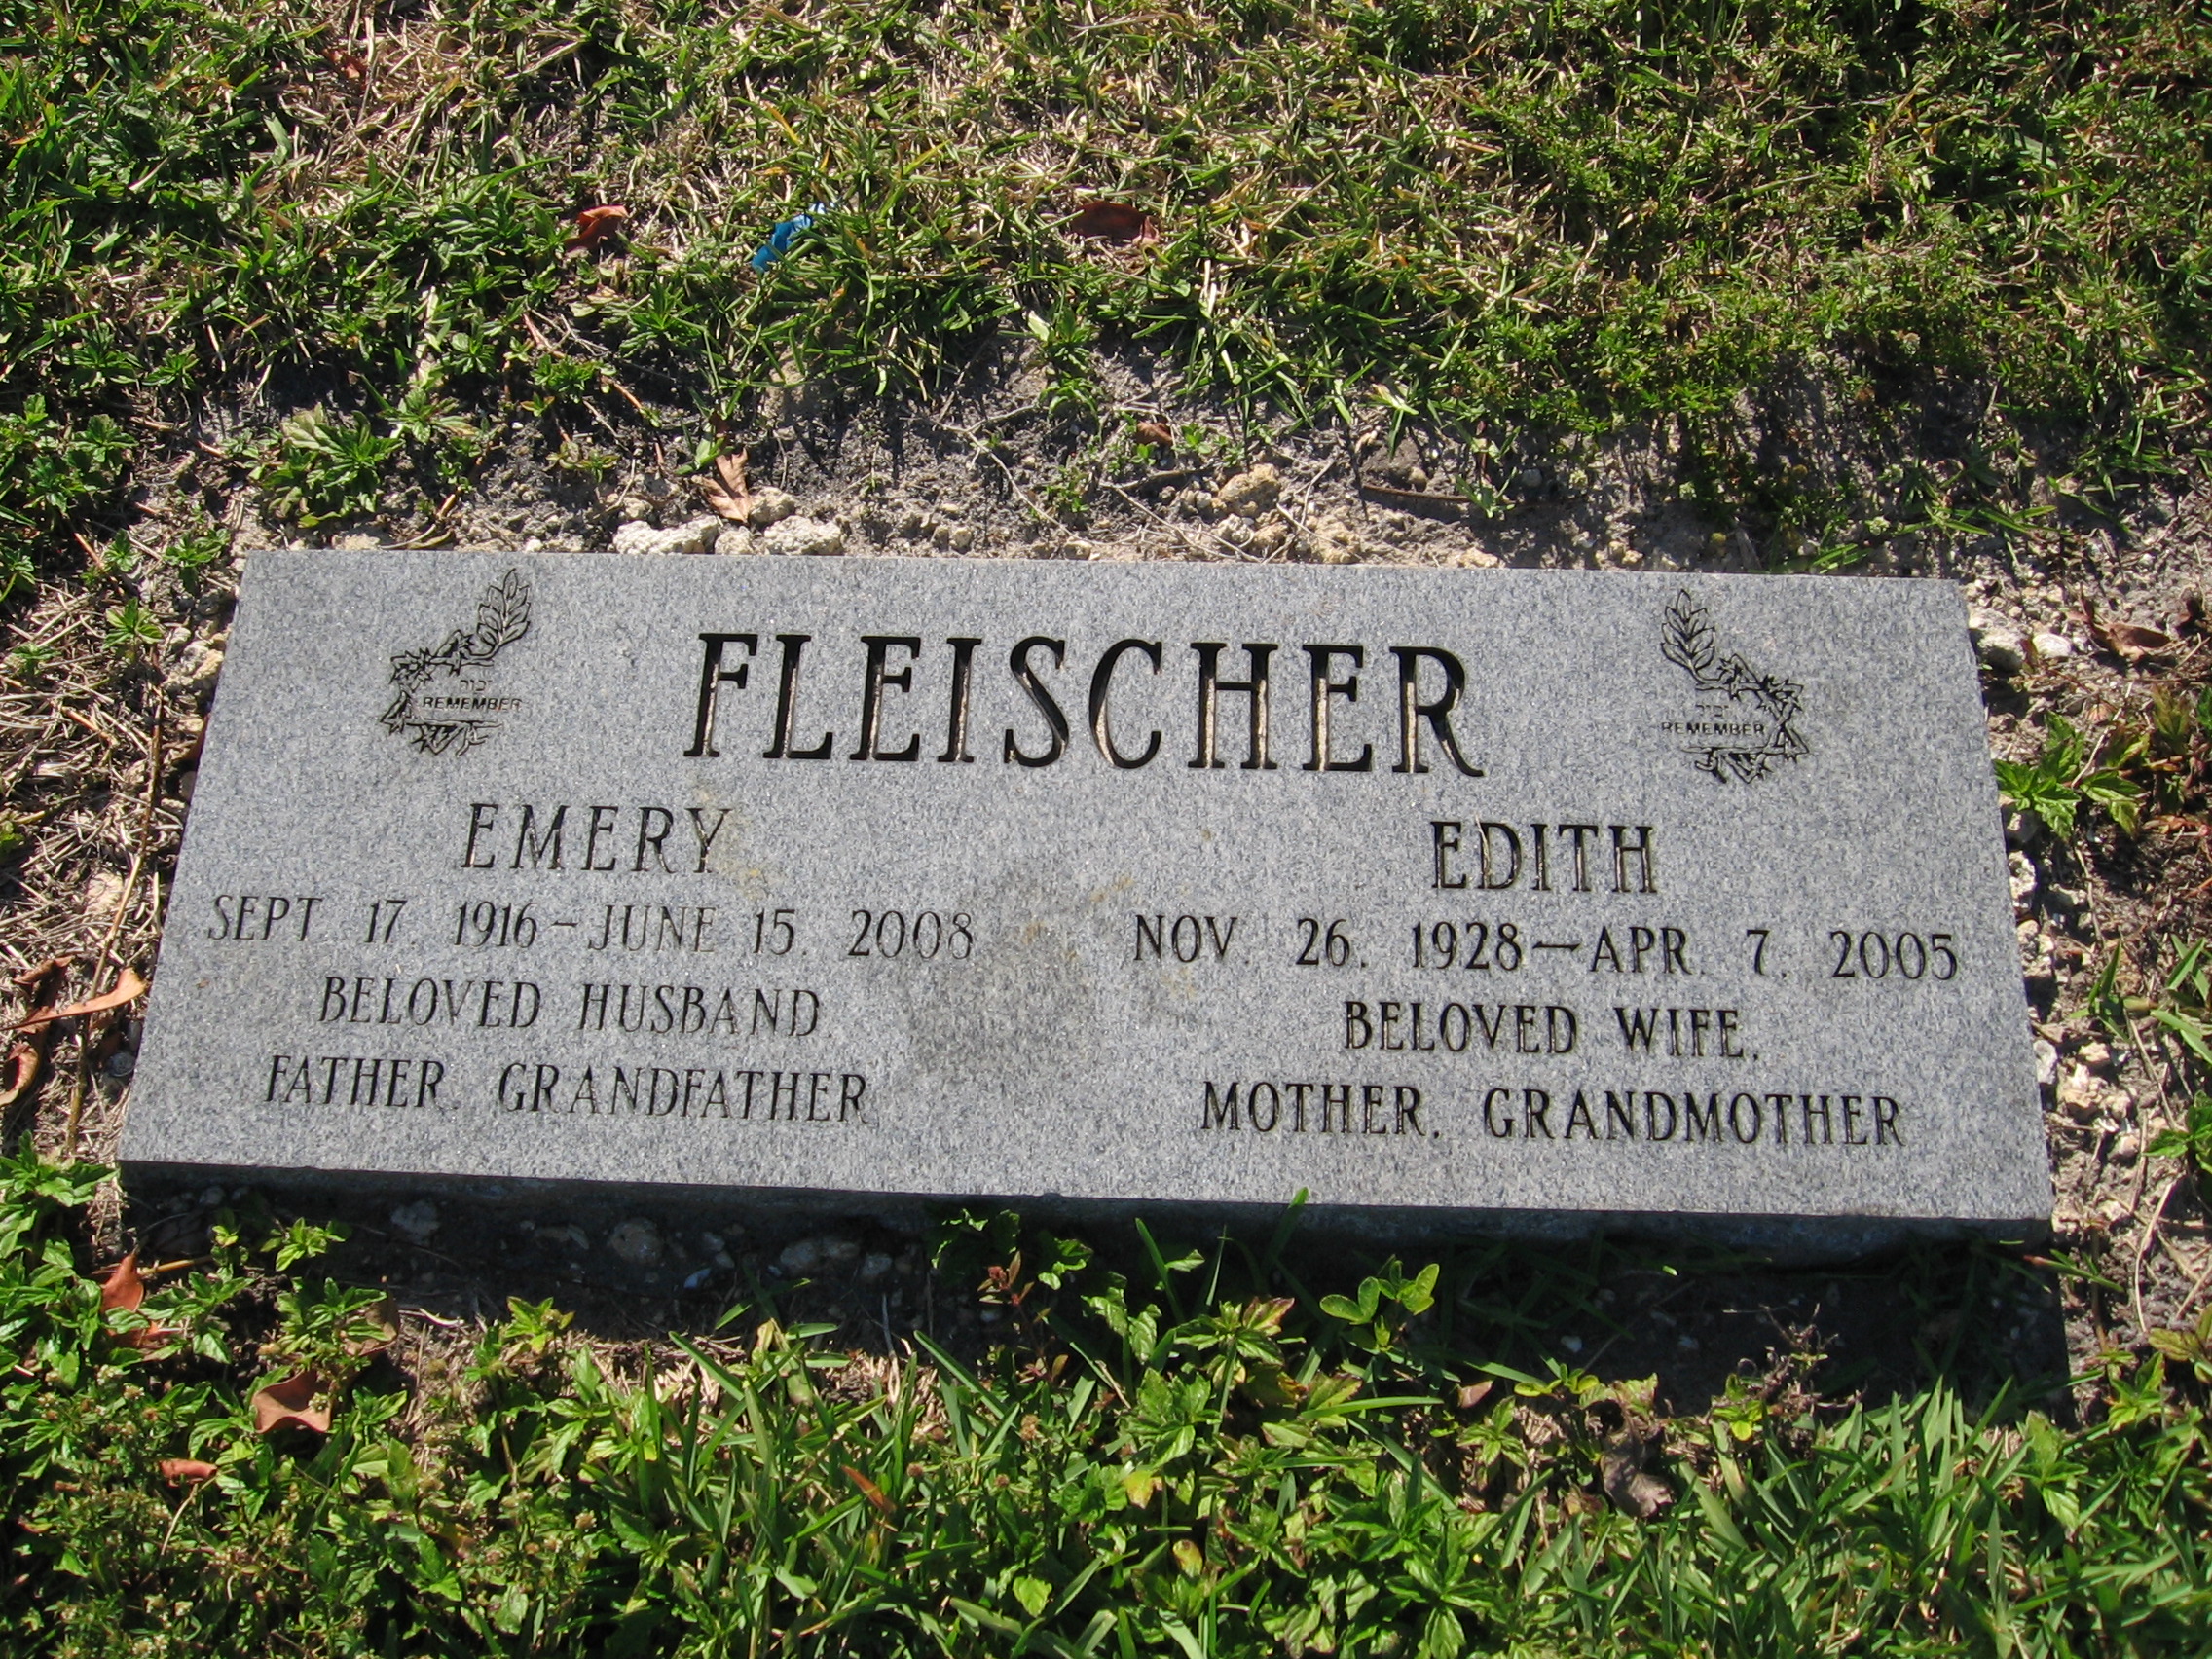 Emery Fleischer